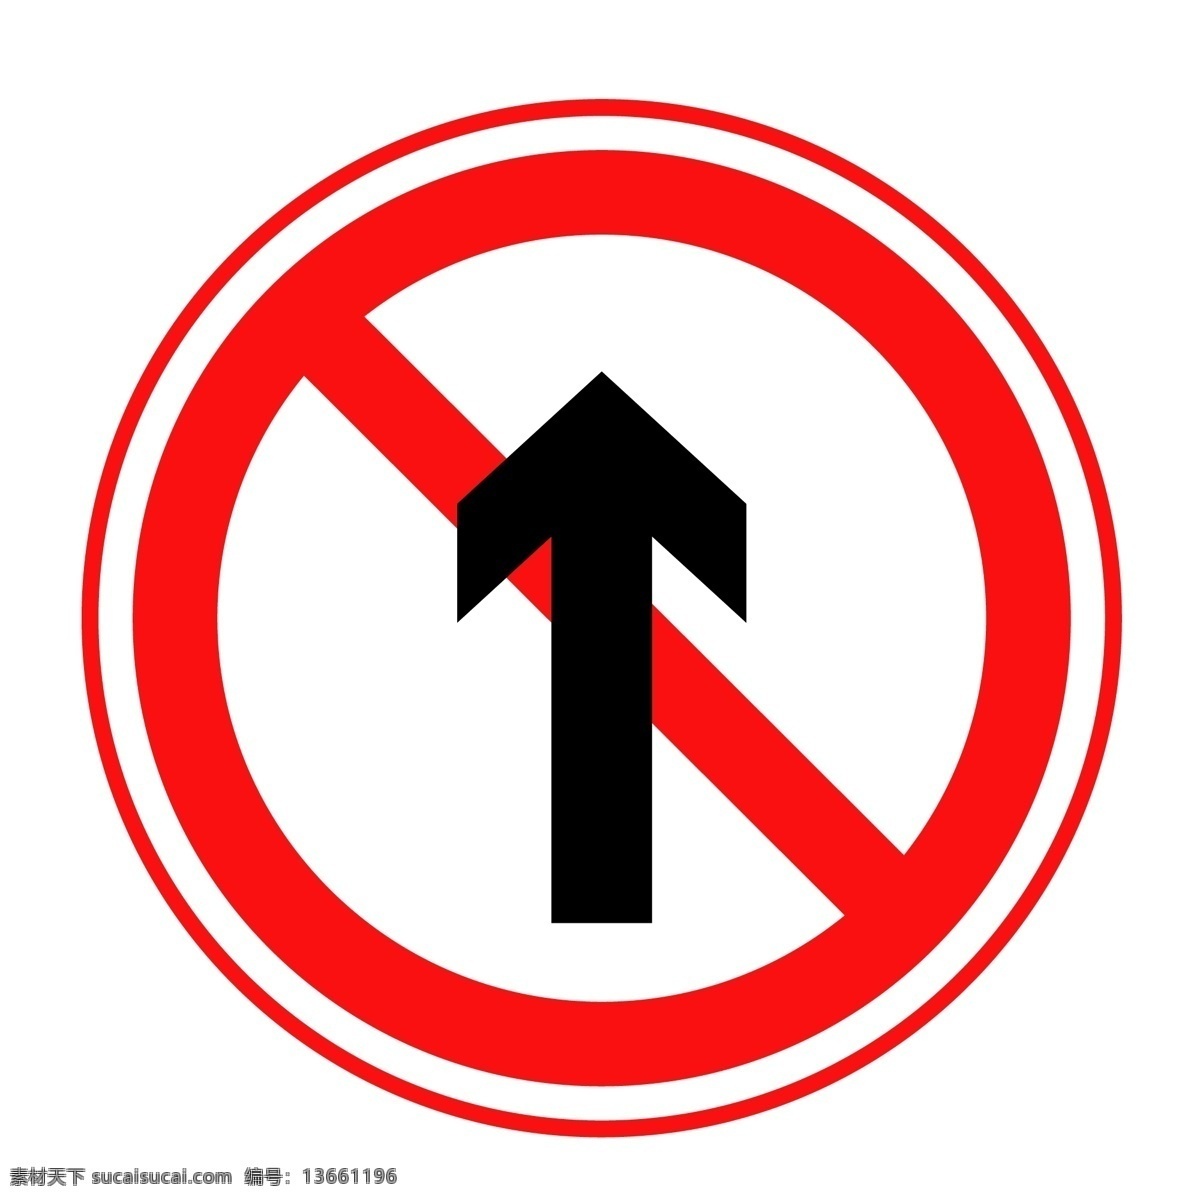 禁止直行 警告标志 指示标志 警示标志 警示标识 危险标示 危险标志 危险标识 指示标识 路标 交通标志 交通安全 警示牌 交通警告 交通标识 标识标牌